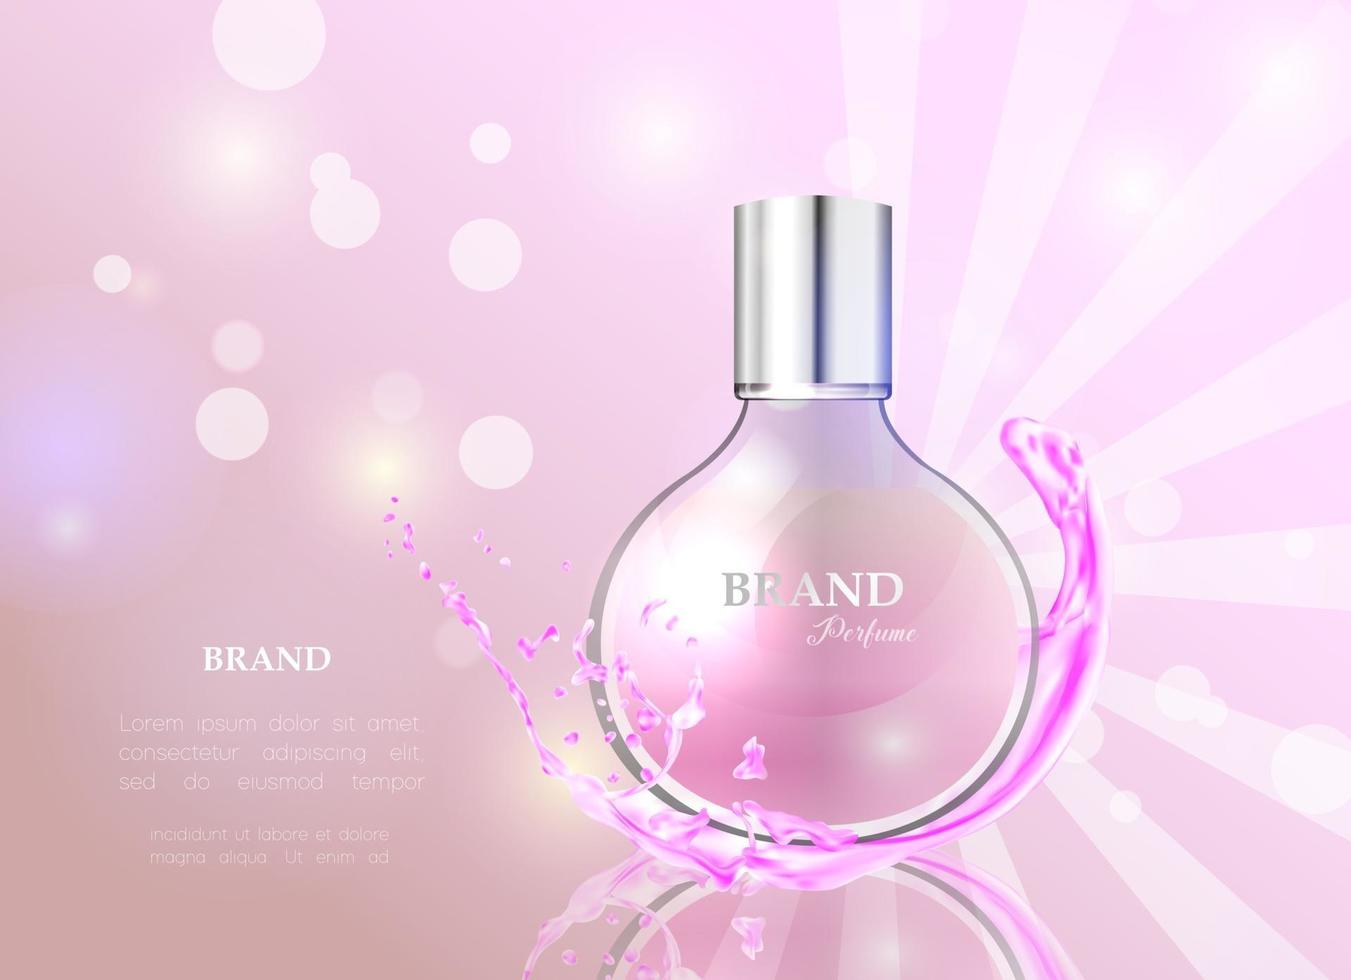 illustrazione vettoriale di un profumo di stile realistico in una bottiglia di vetro. ottimo poster pubblicitario per promuovere una nuova fragranza.